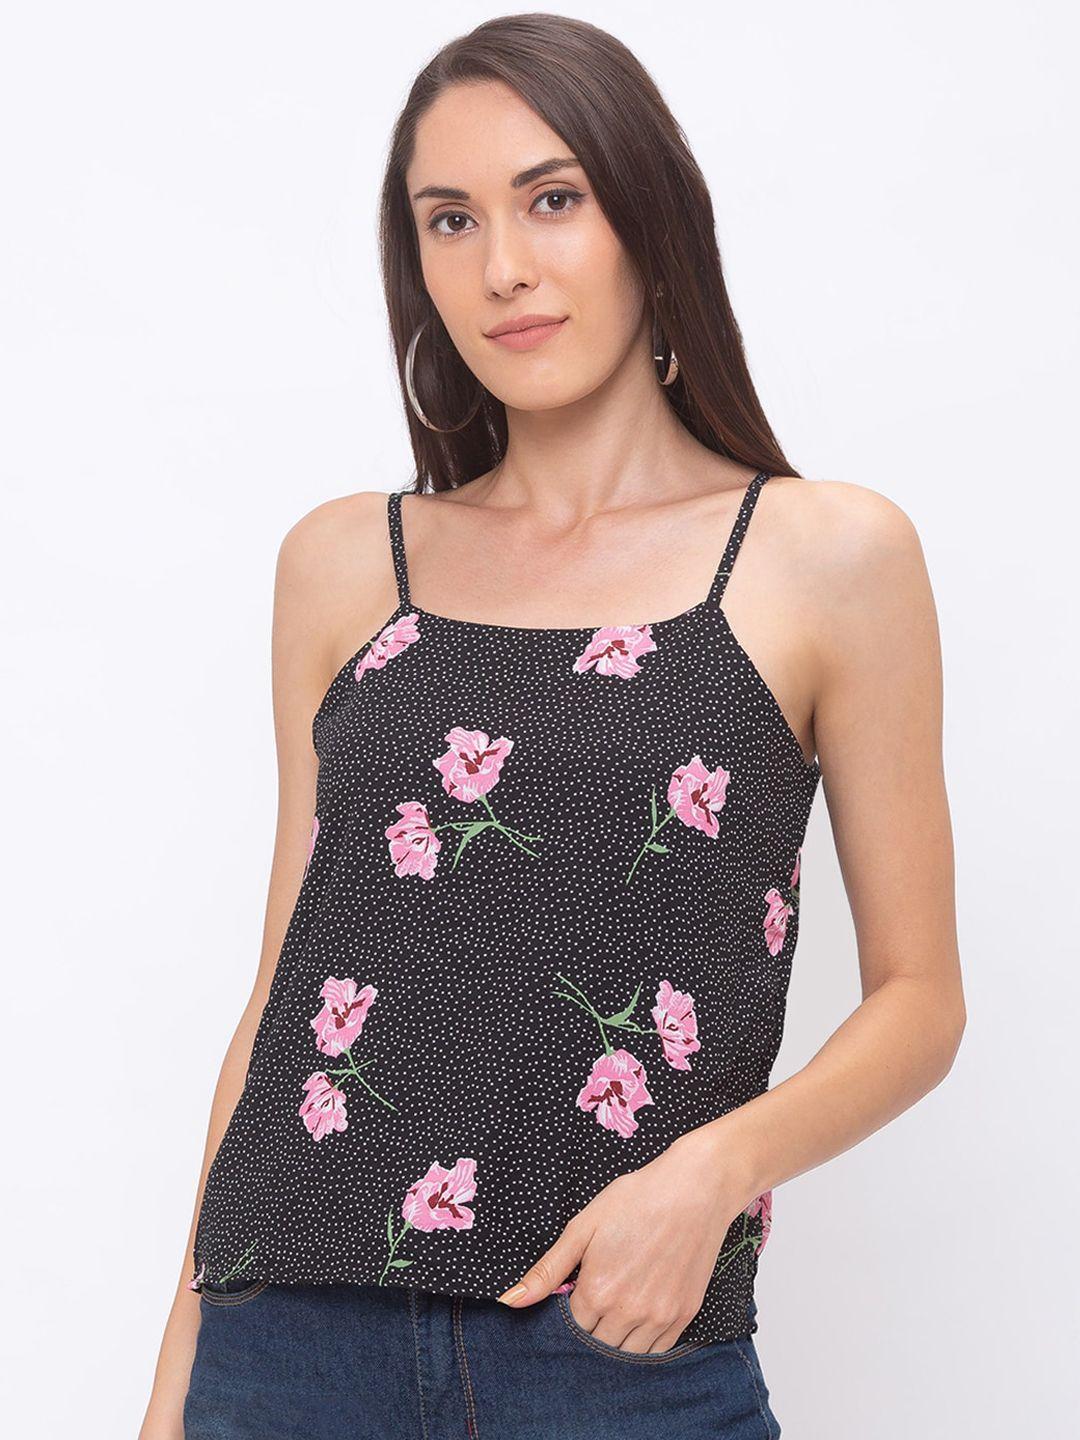 globus-women-black-&-pink-floral-print-pure-cotton-top